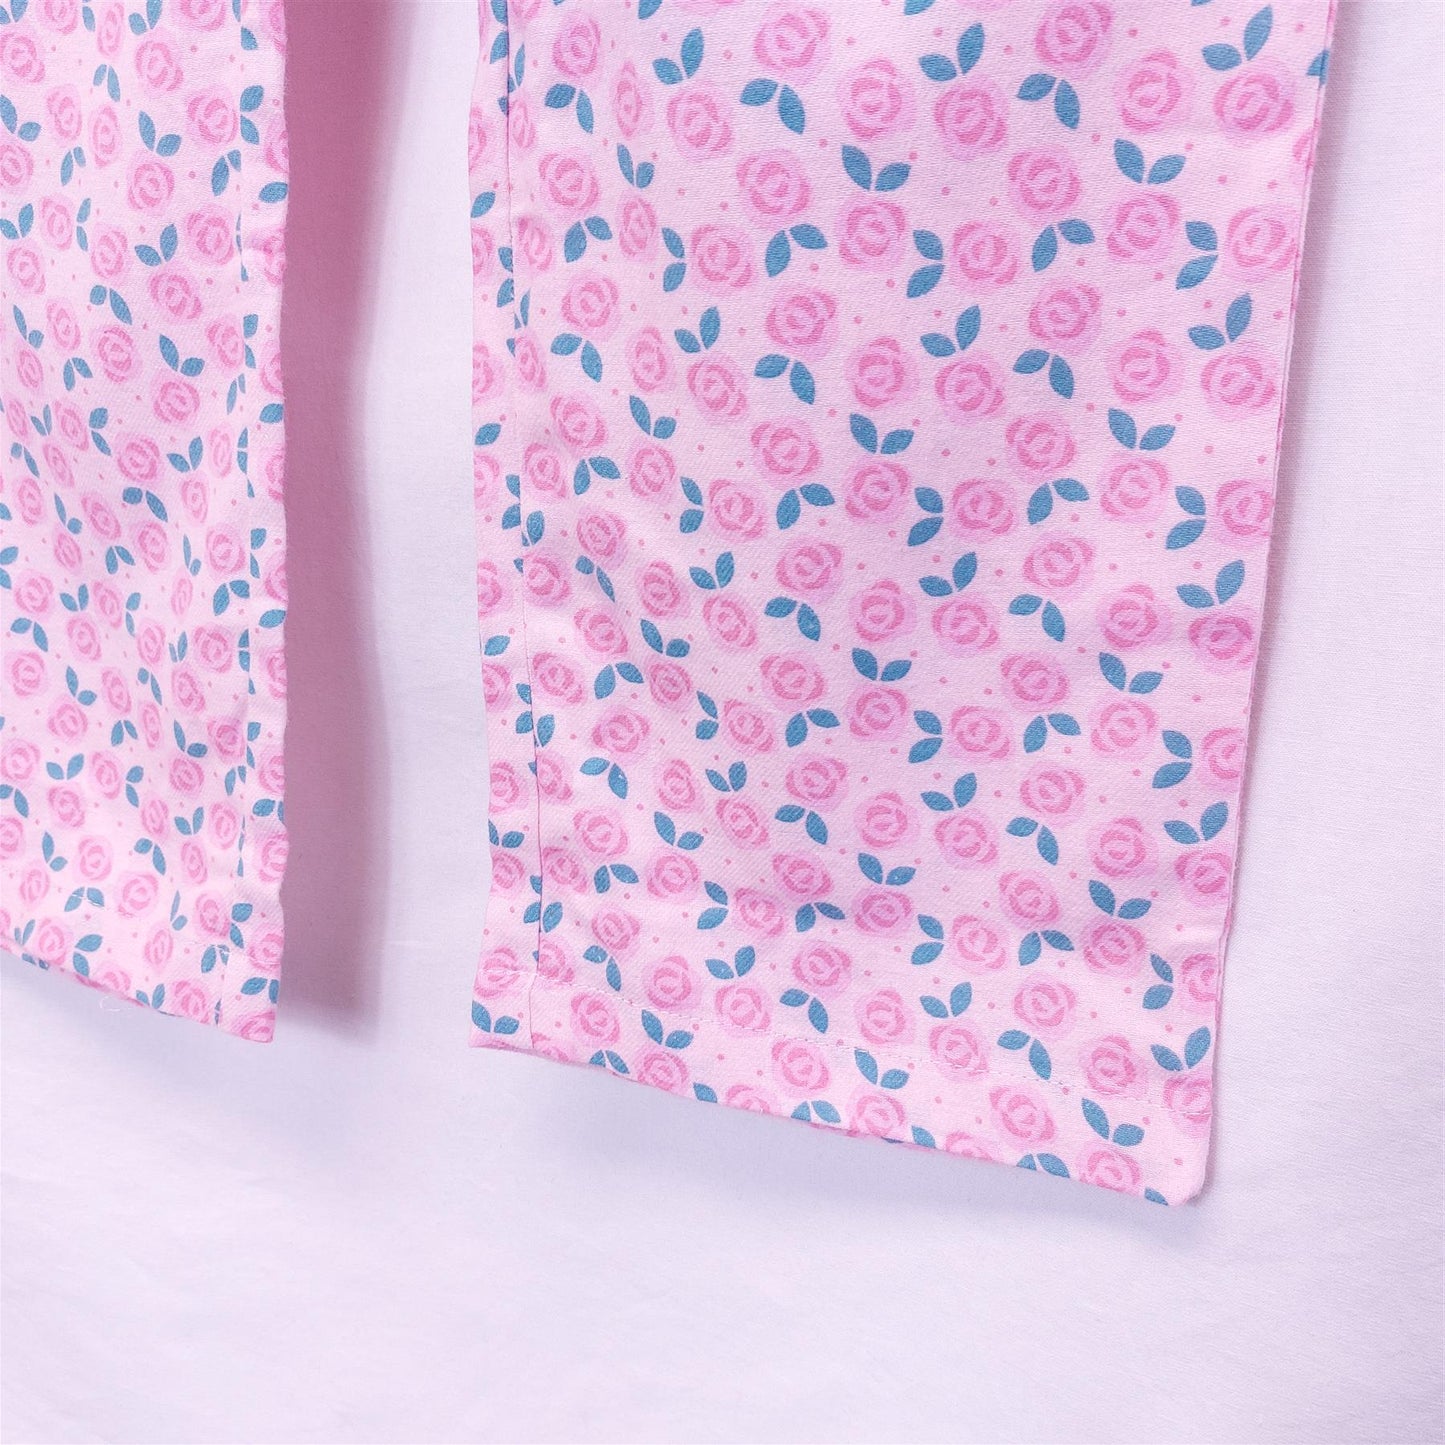 Women's Rose Pyjama Bottoms Pure Cotton Pink Floral Soft Comfy Warm PJ Pants